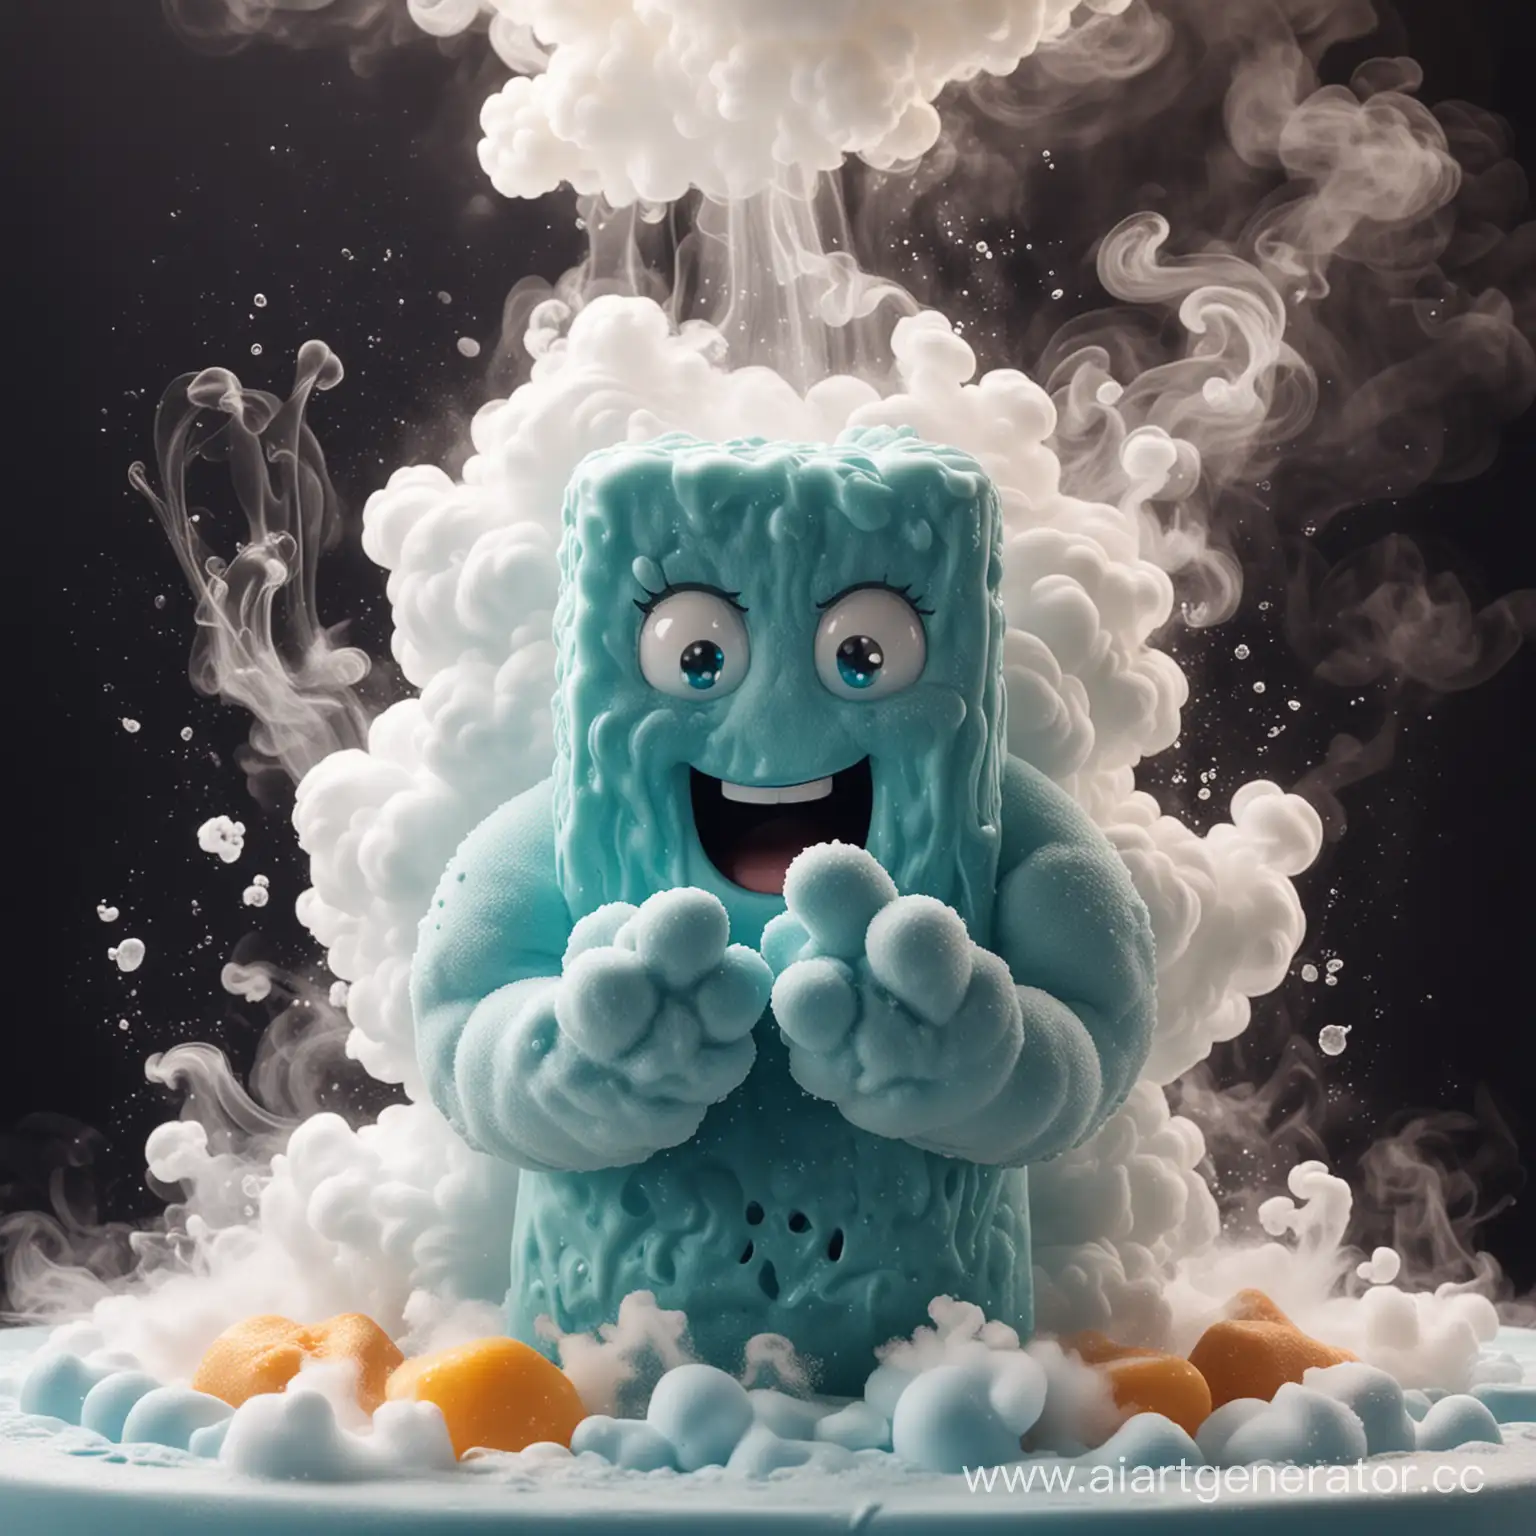 изображение мультяшного персонажа, натирающего руки мылом, вокруг него пена и облаком дыма, изображение  должно быть захватывающим и насыщенным с яркими цветами